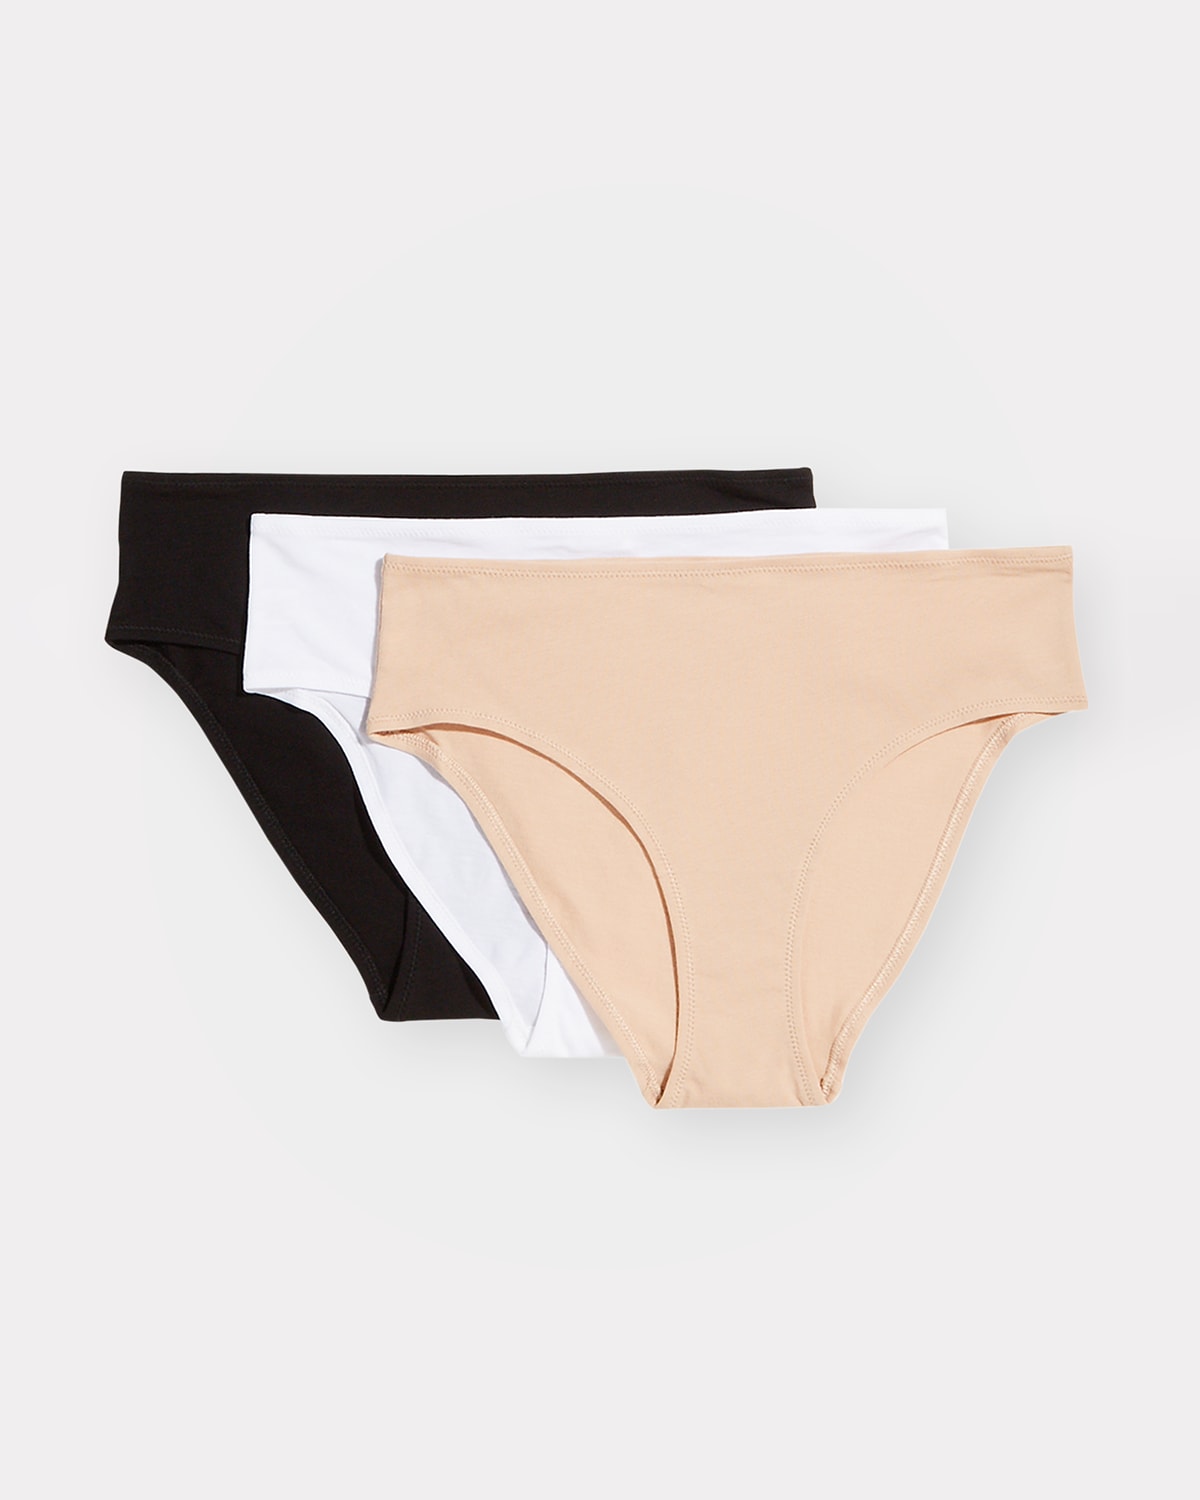 Jenny Jen 3-Pack Zoe Women's Lace Cheeky Panties Bikini Hipster Underwear